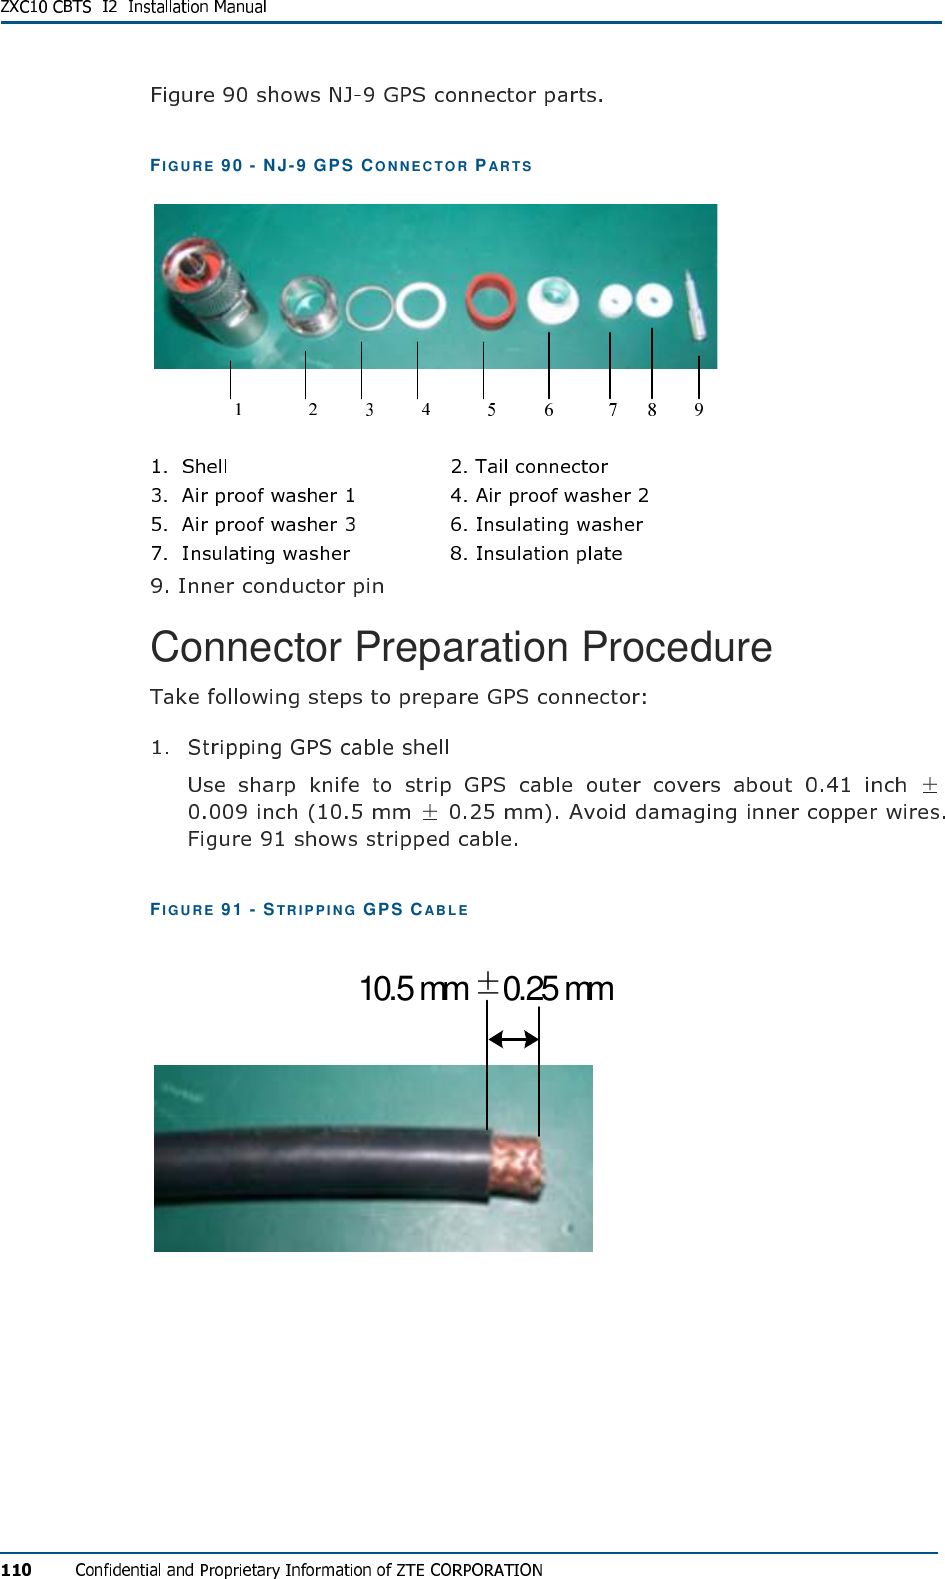 FIG U R E   90 - NJ-9 GPS CO NN EC TO R PA R T S   Connector Preparation Procedure  FIG U R E   91 - STR IP PI NG  GPS CA B L E  ± 10.5 mm 0.25 mm 